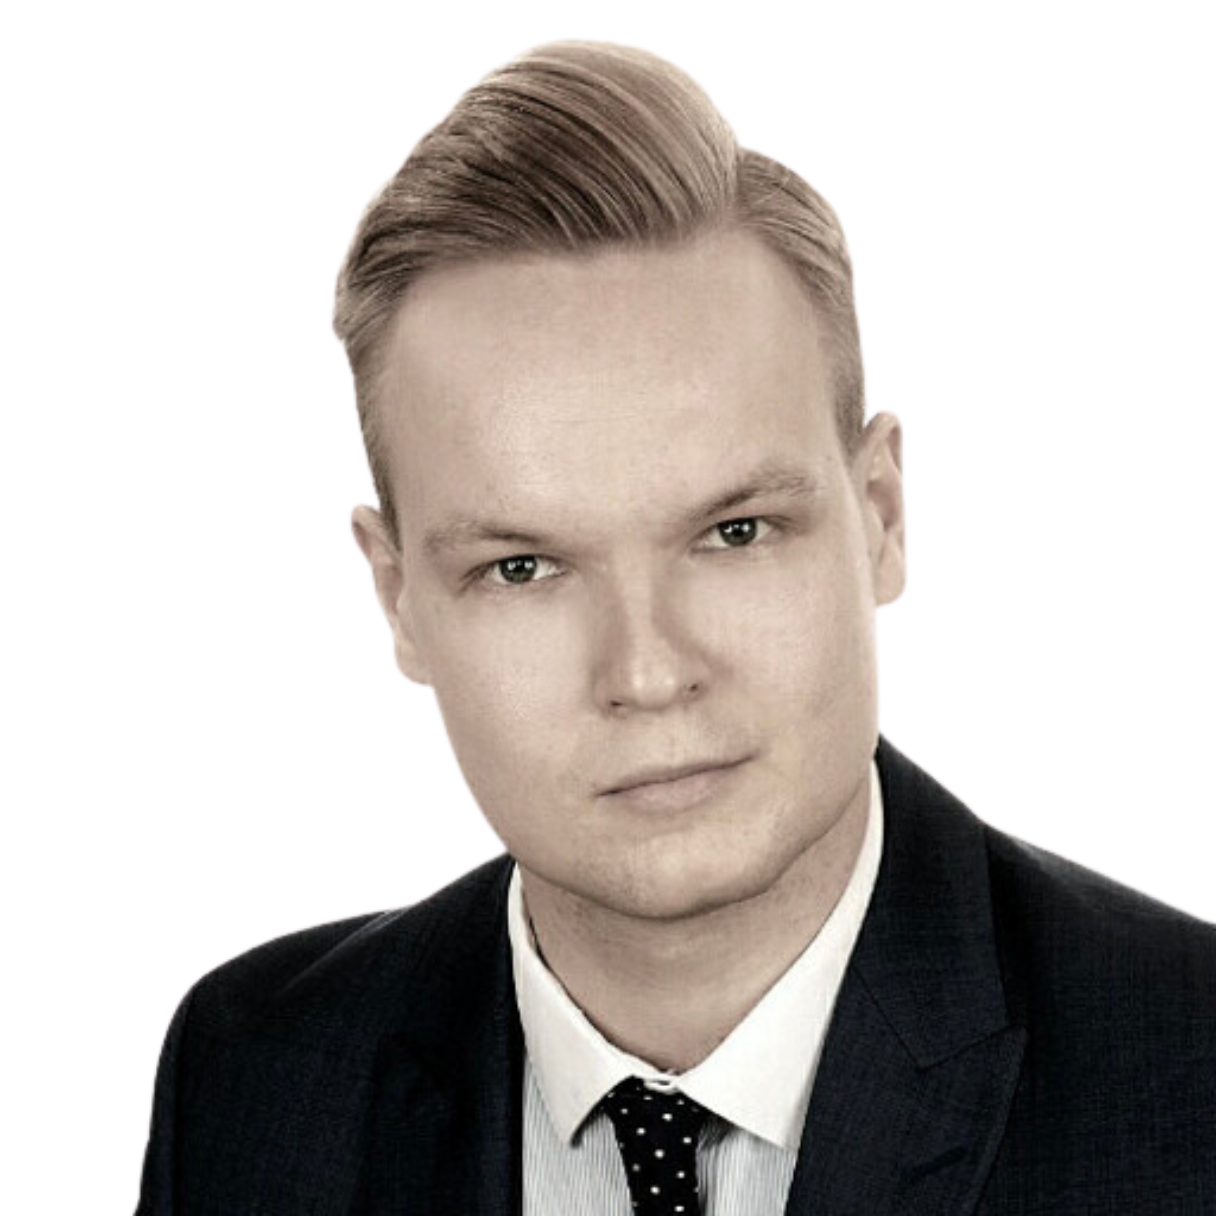 Sampo Pesonen - Chief Financial Officer